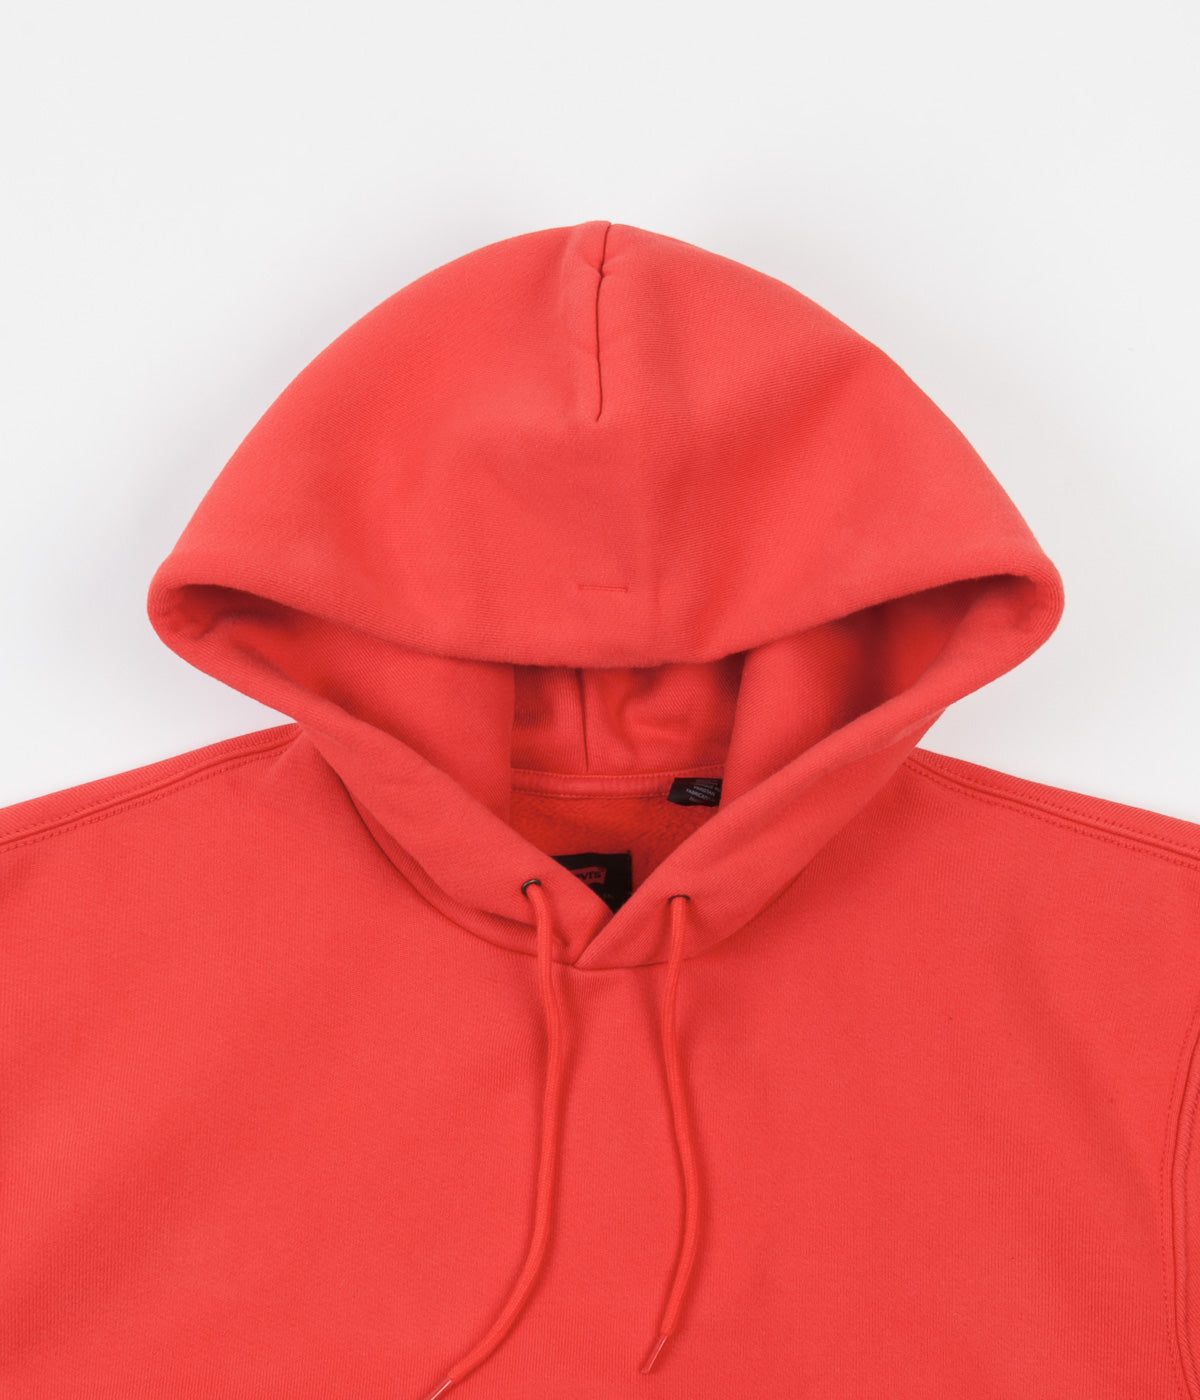 red levis hoodie